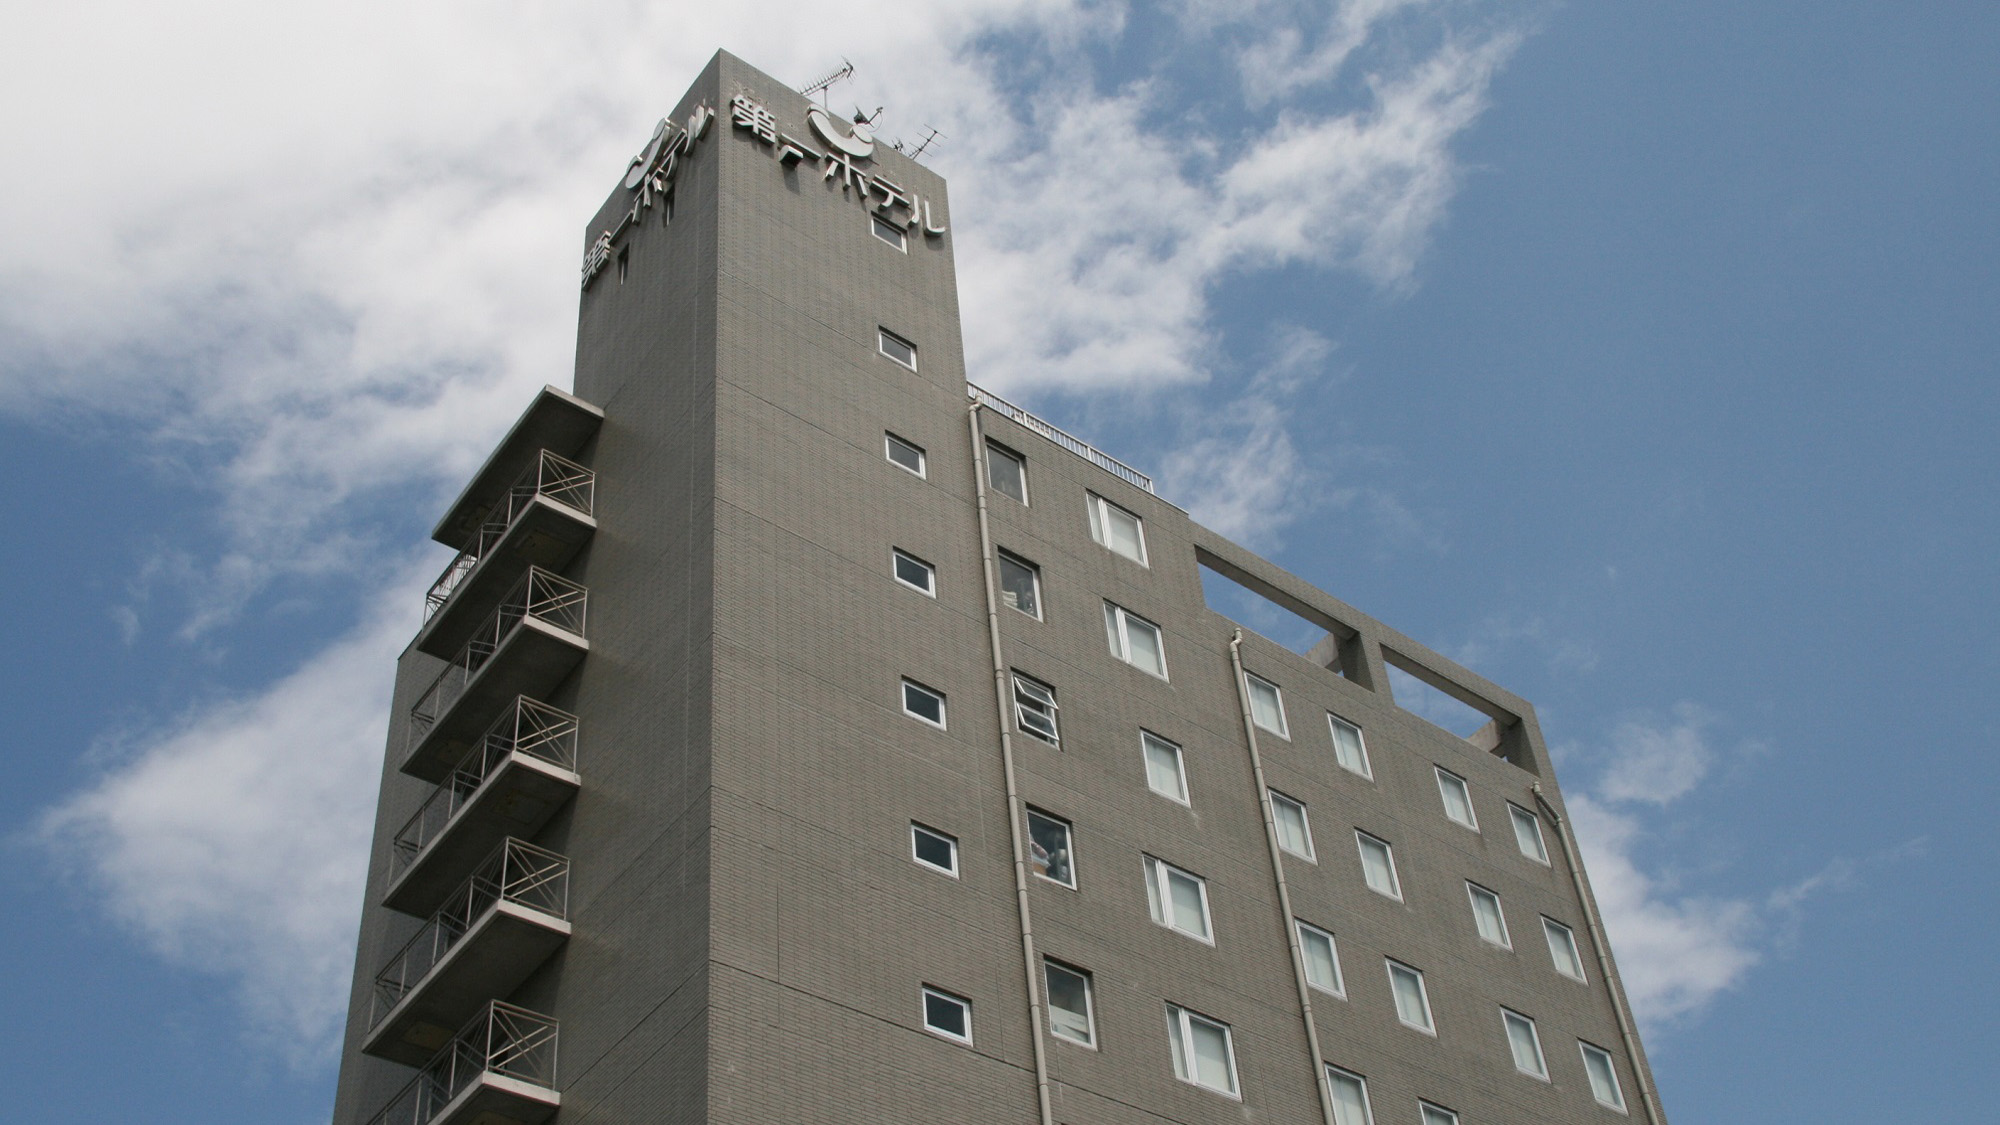 Uji Daiichi Hotel